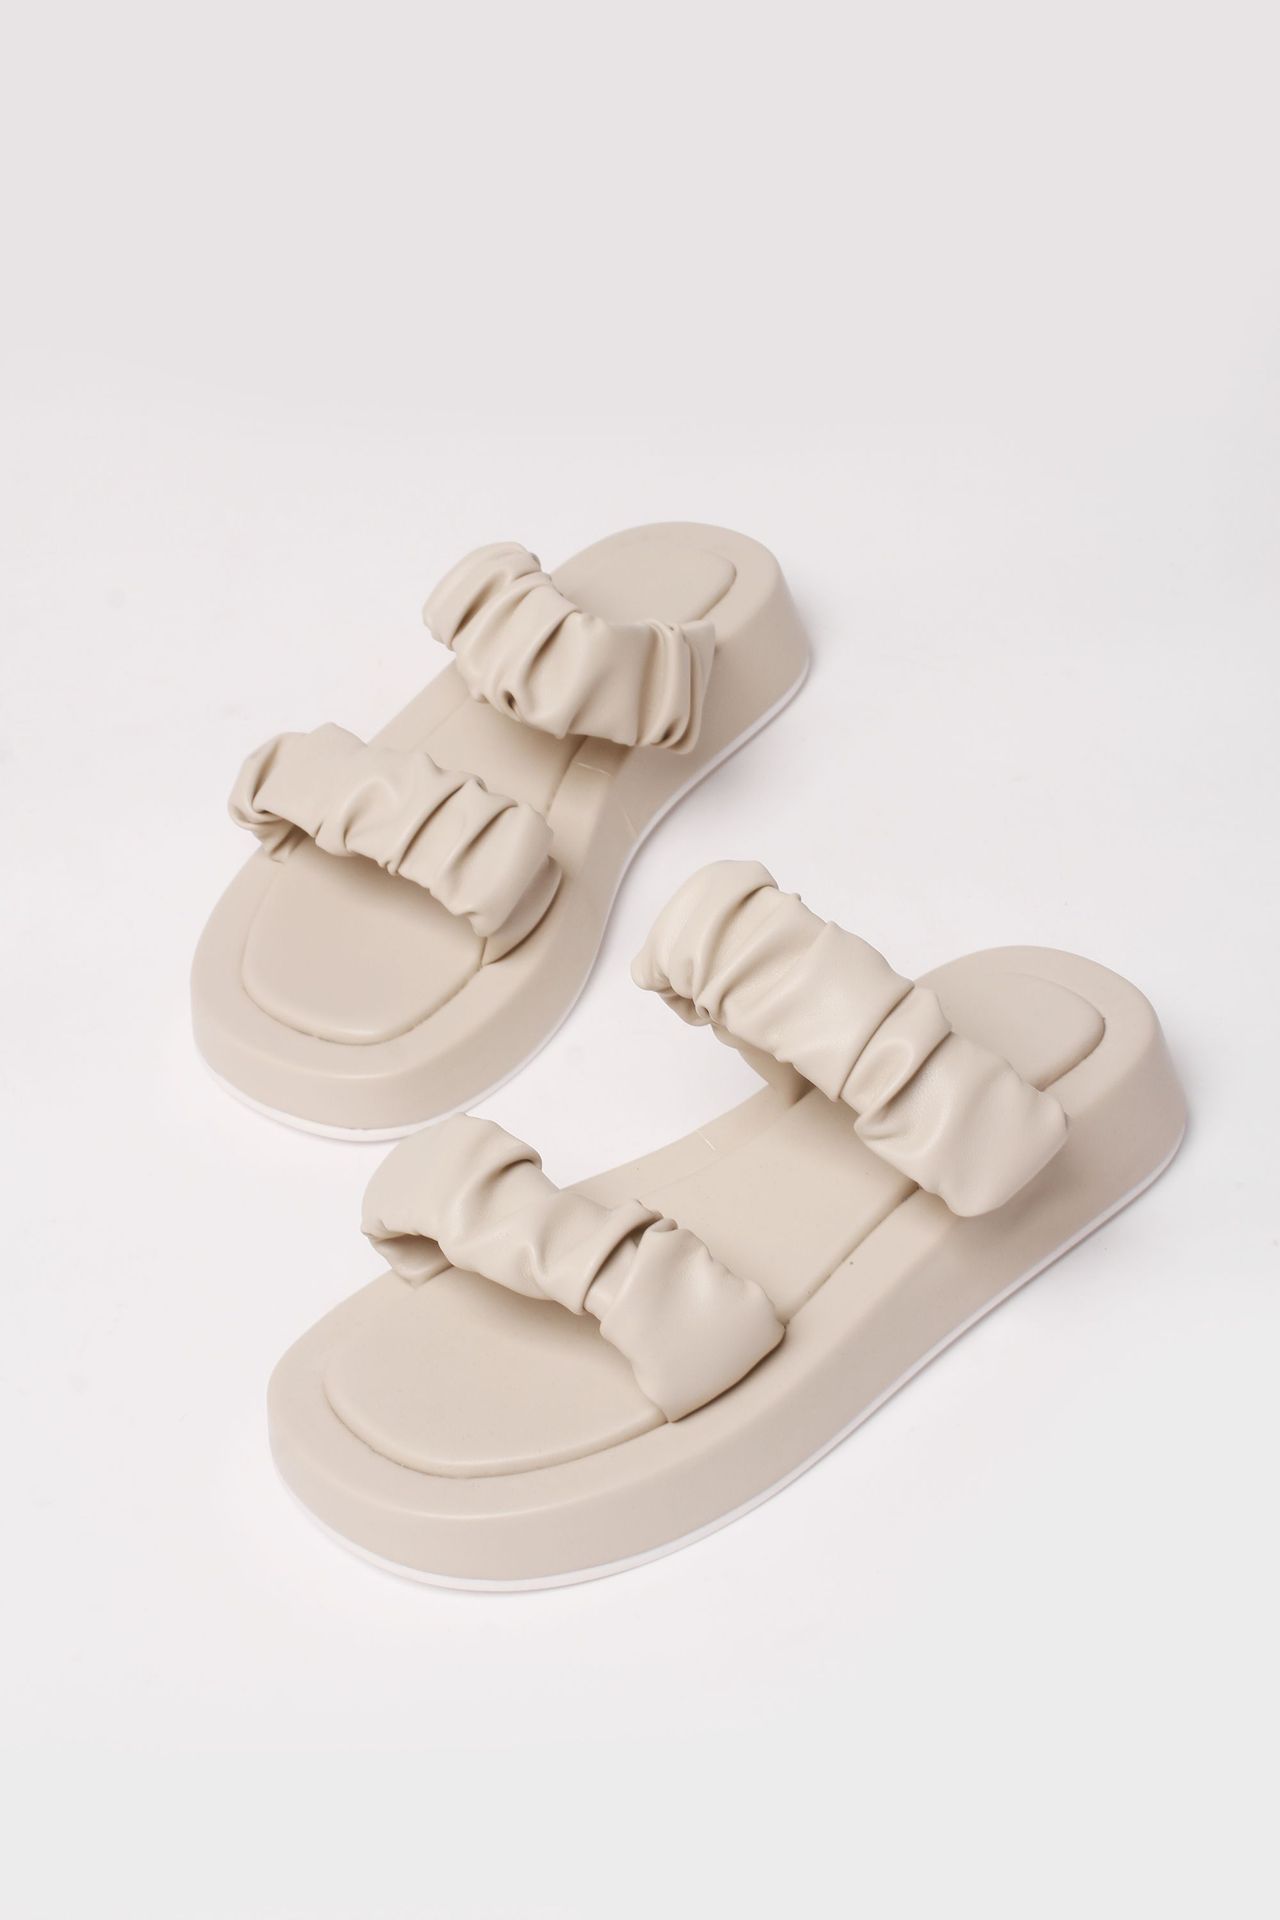 Chiko Antonice Open Toe Flatforms Sandals